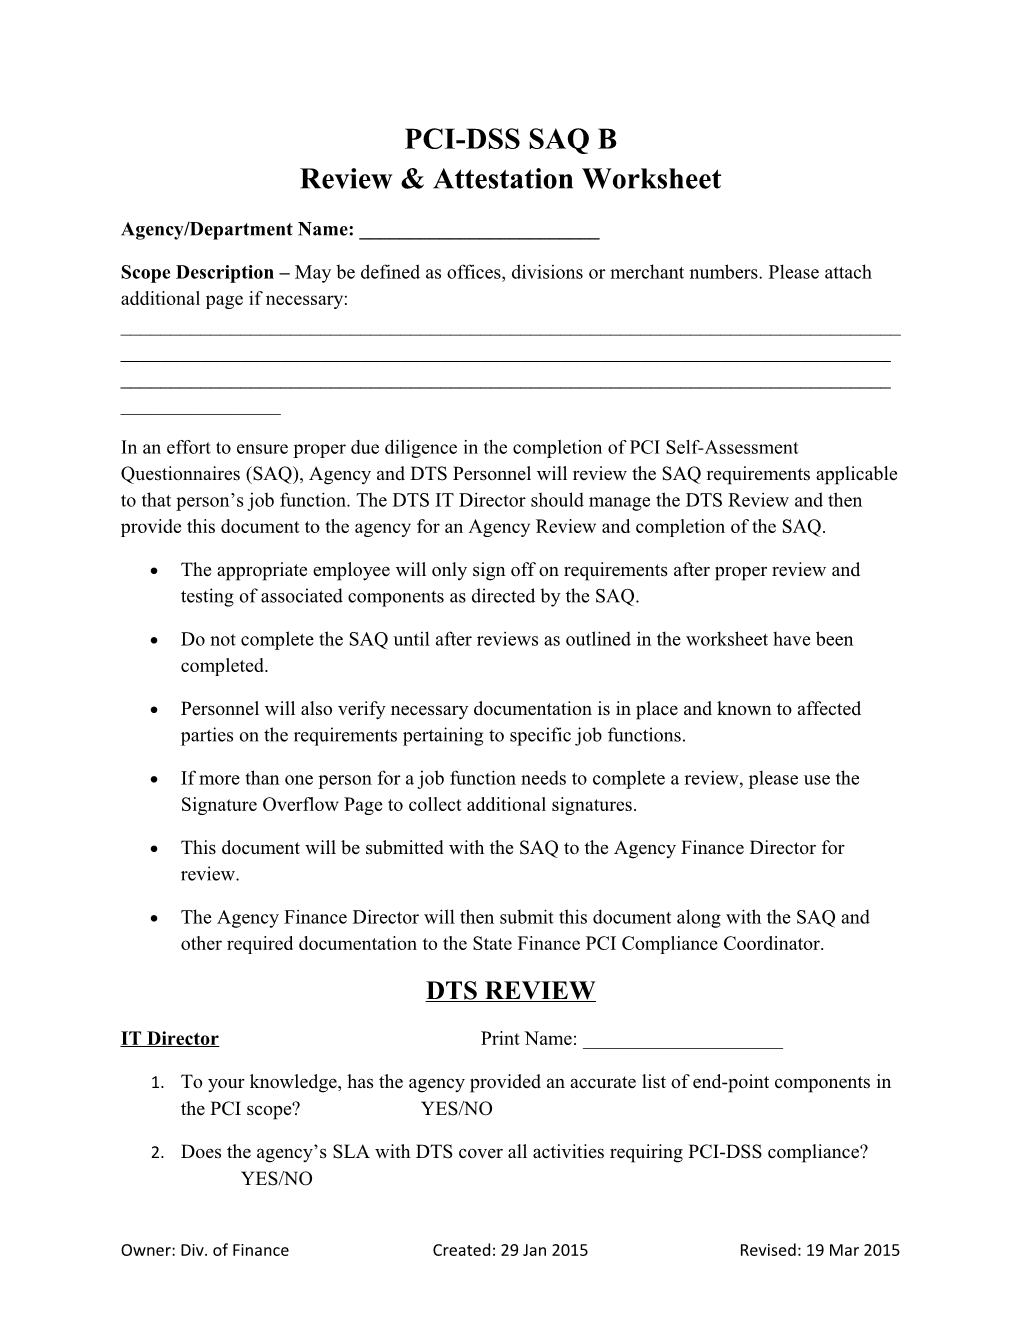 PCI-DSS SAQ B Review & Attestation Worksheet